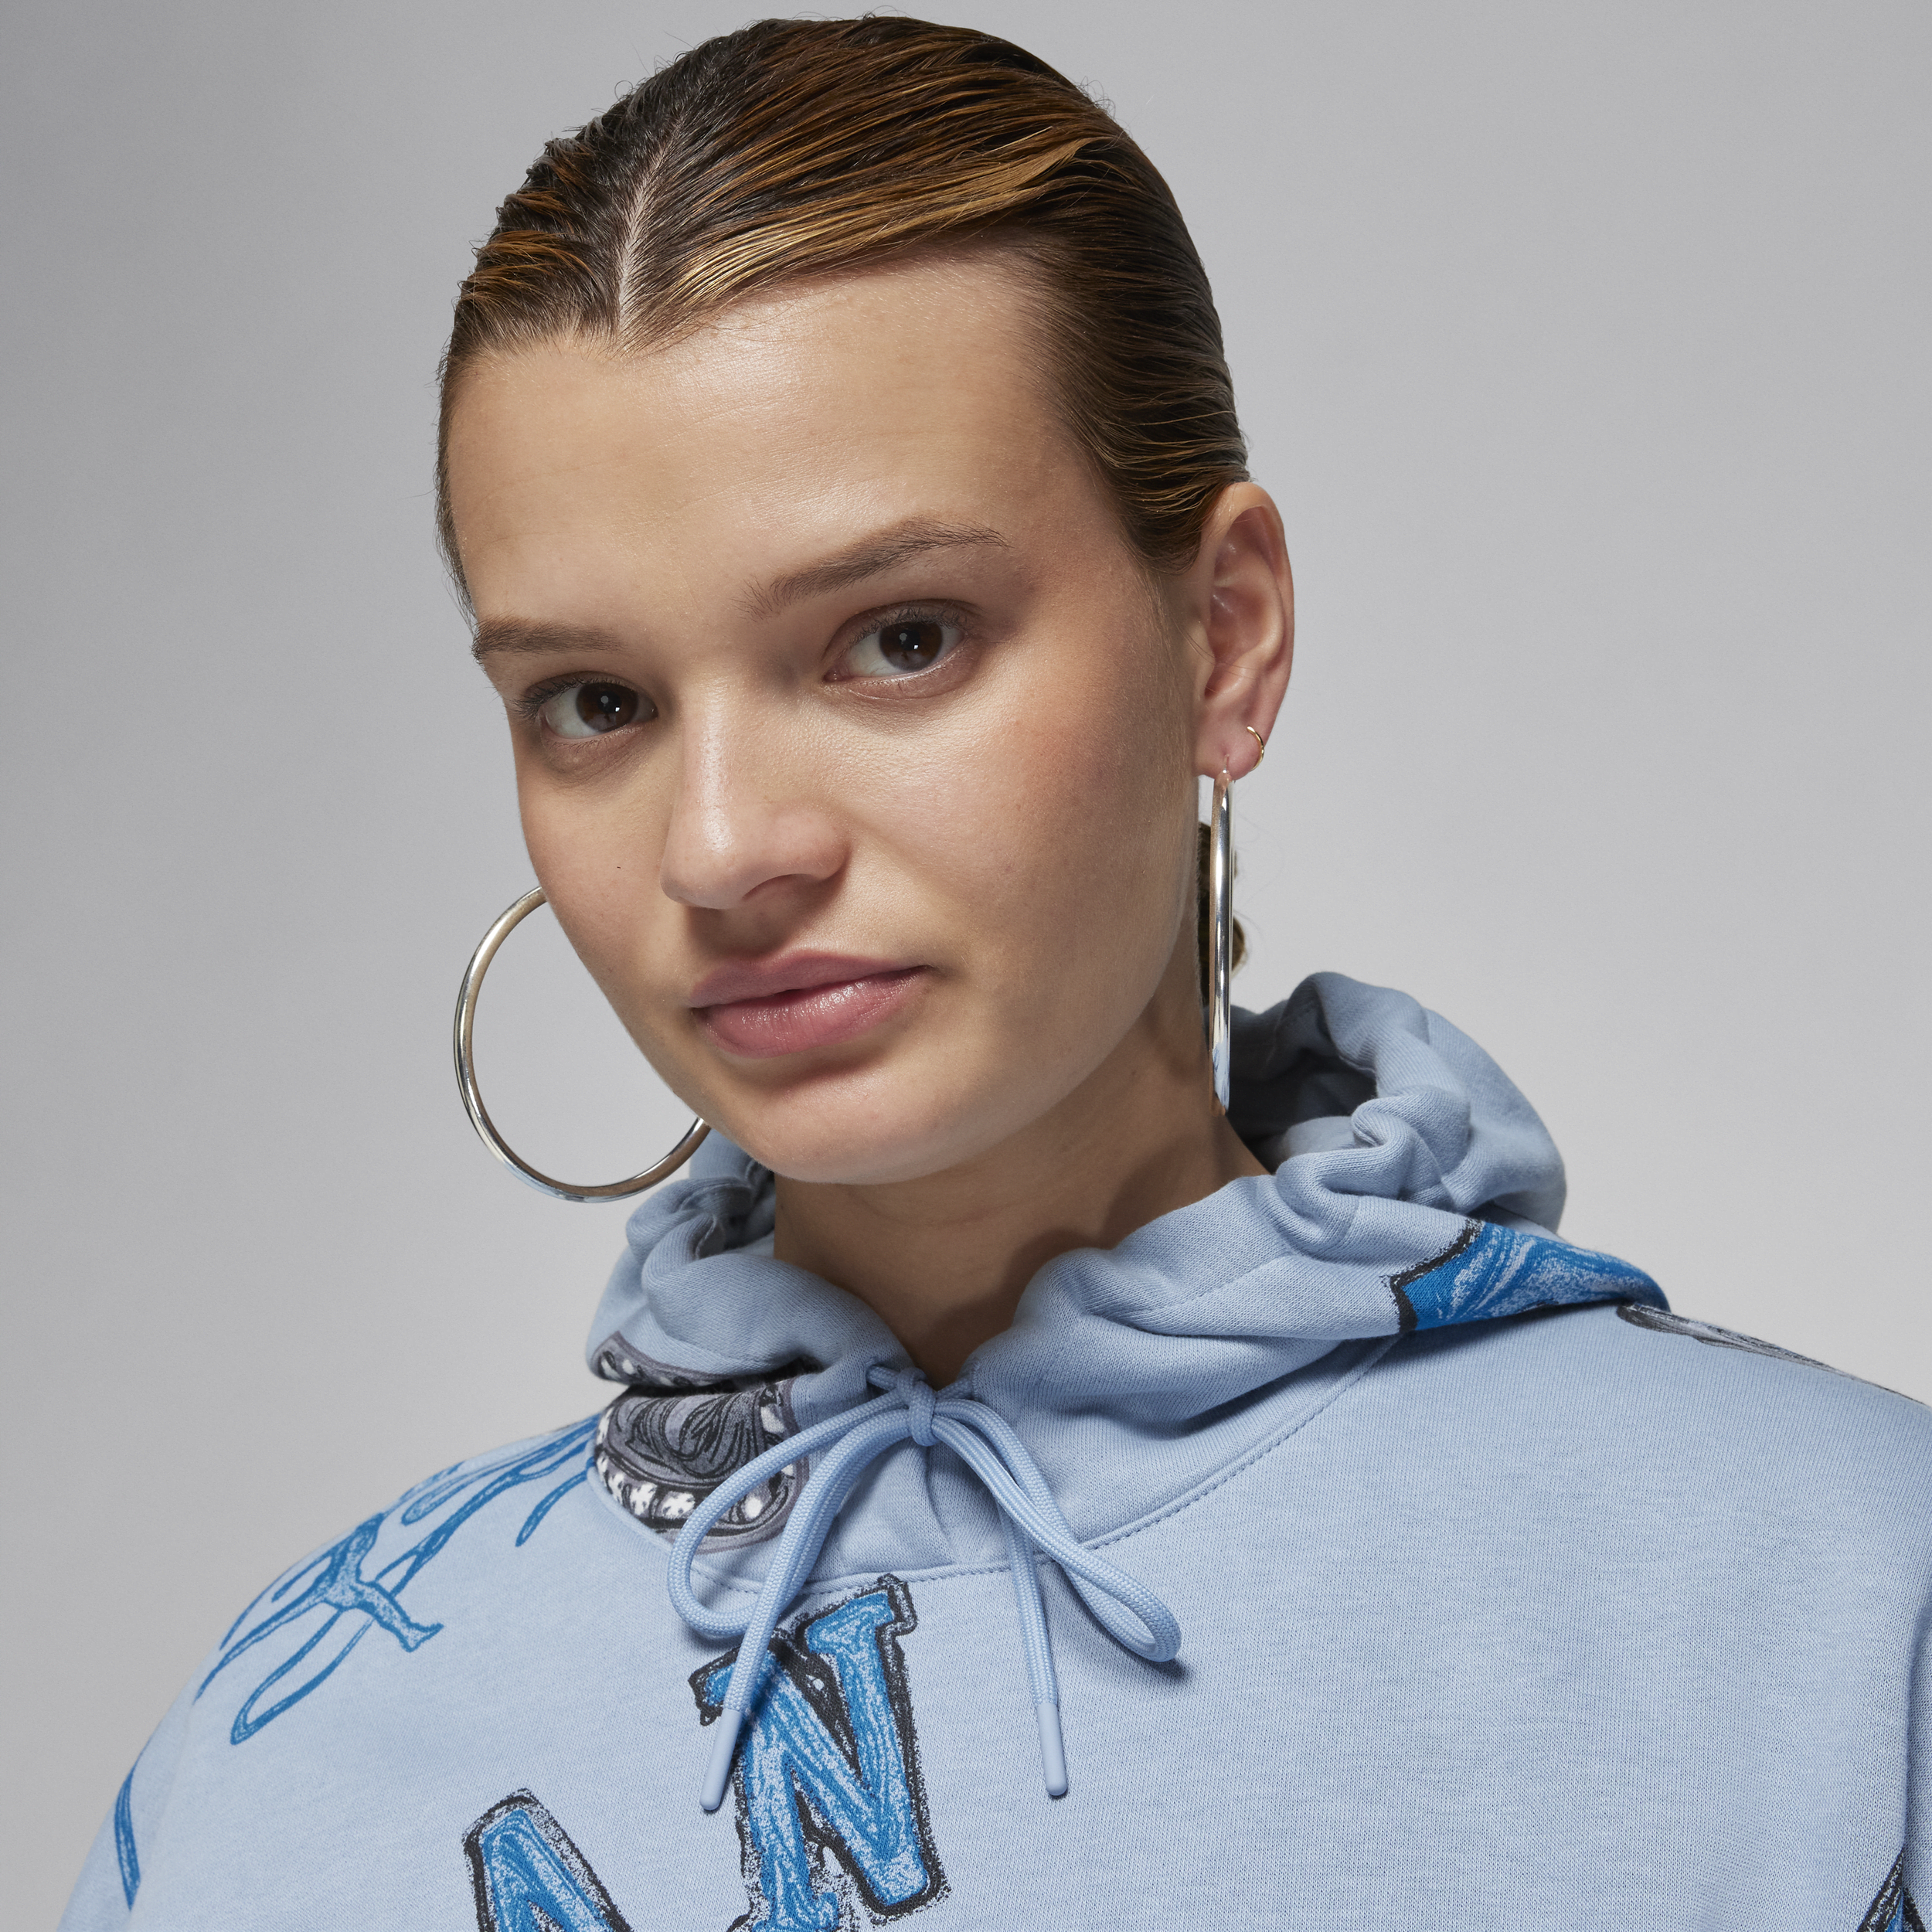 Jordan Brooklyn Fleece hoodie voor dames Blauw